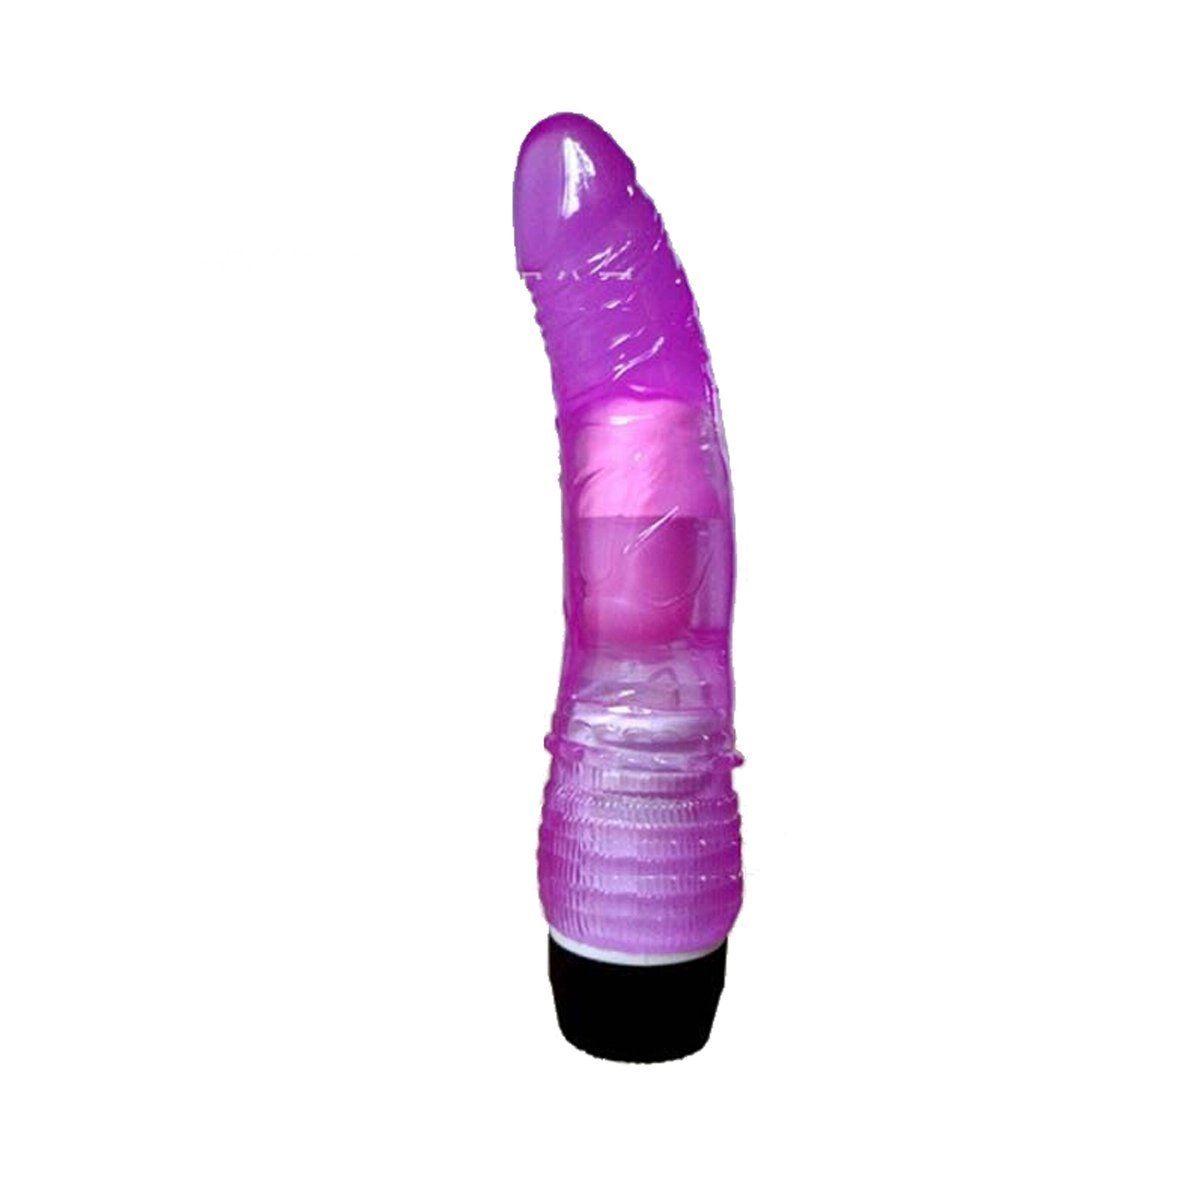 Titanium reccomend Golden triangle flamenco 6.5 jelly vibrator purple